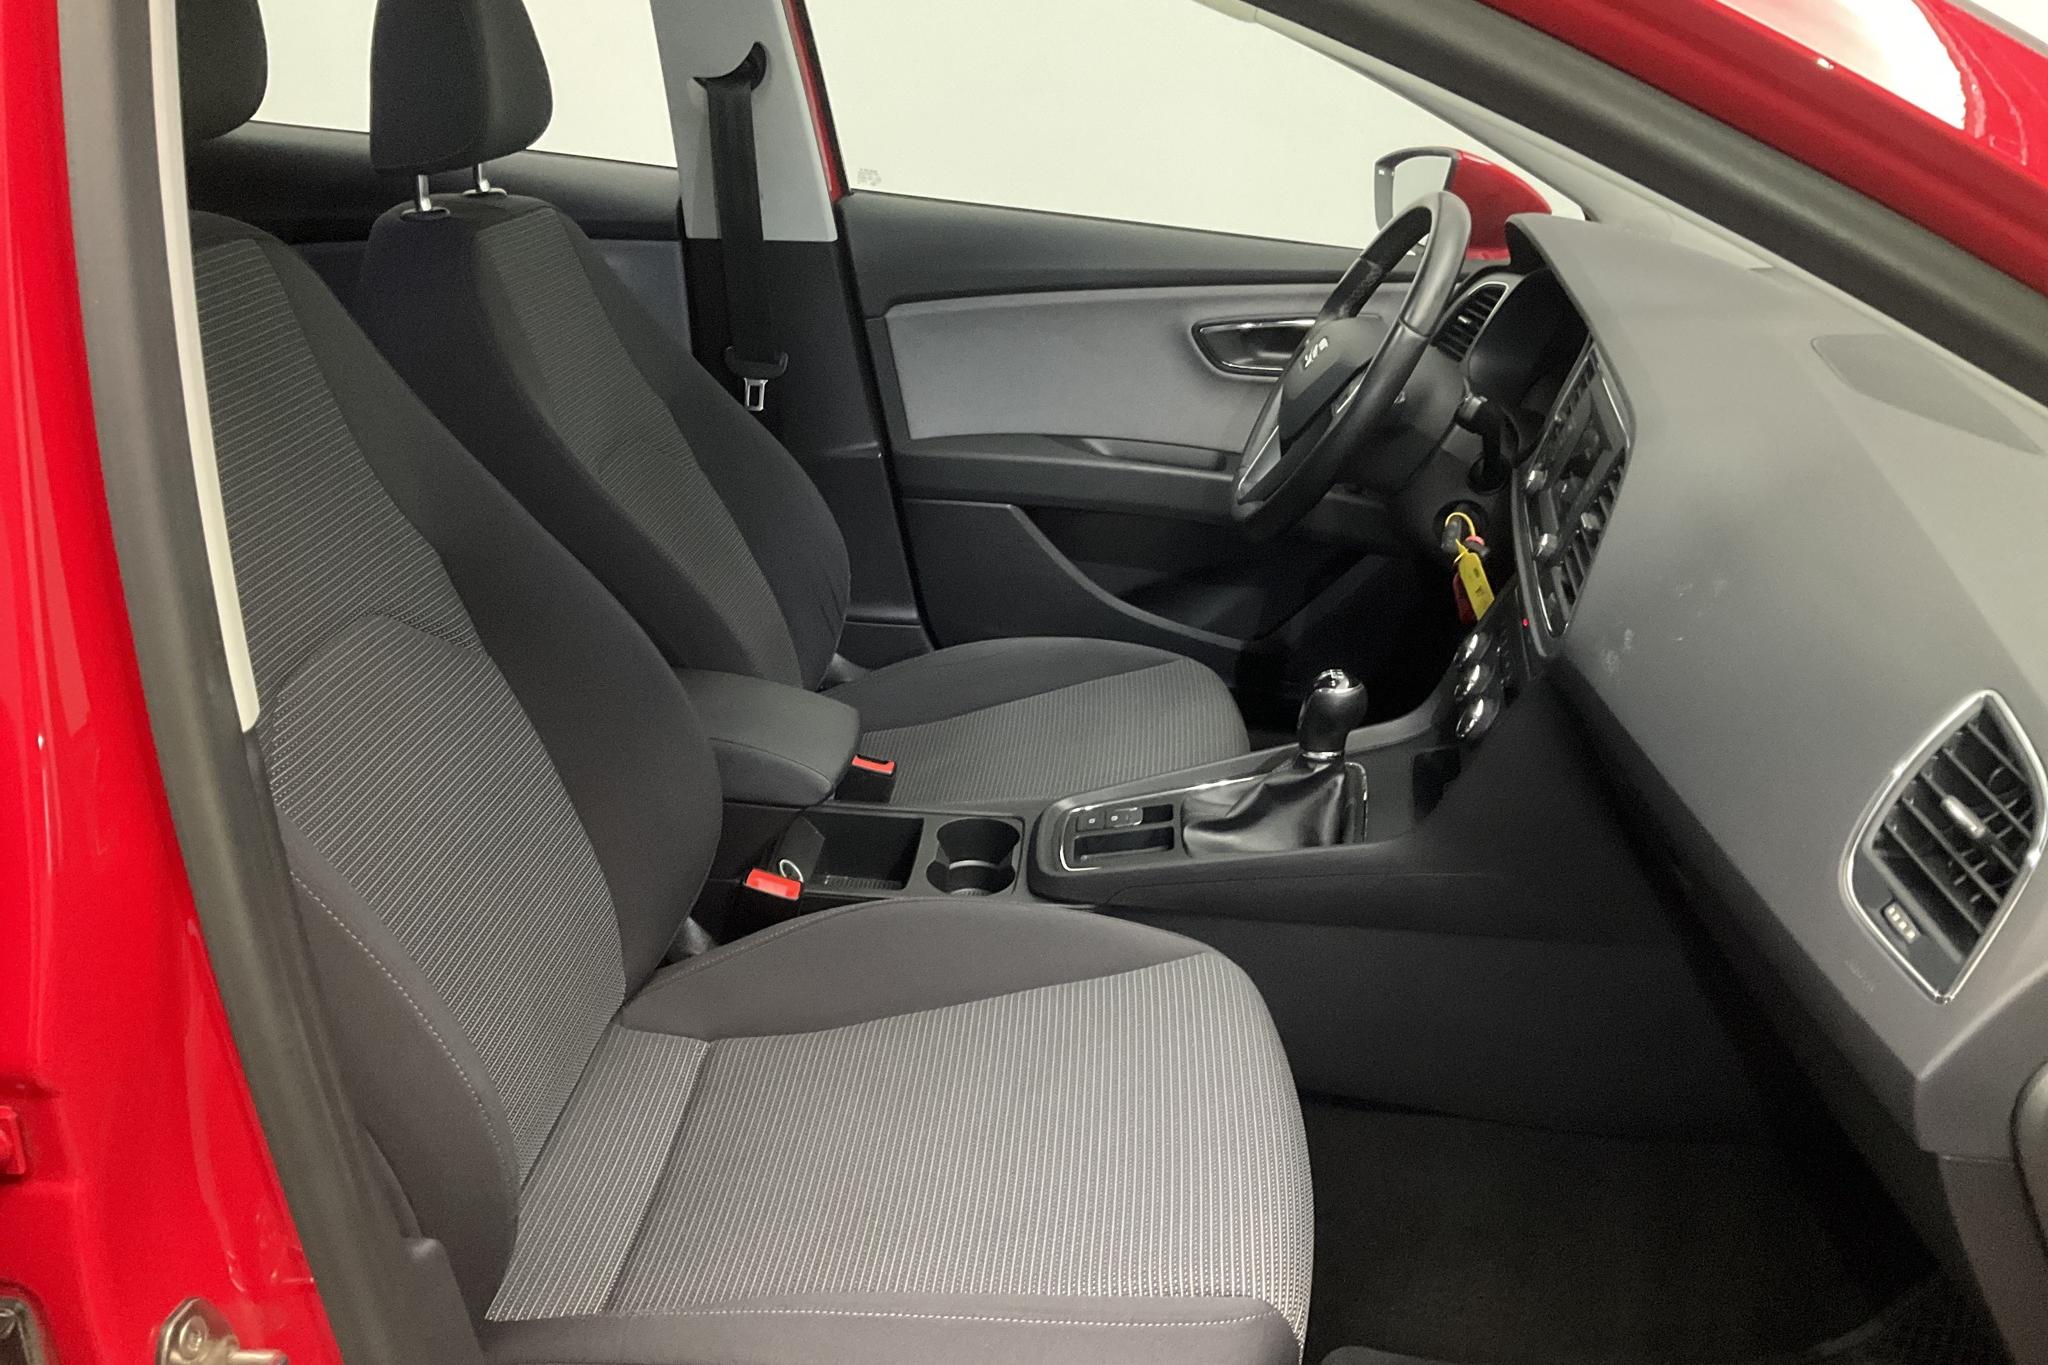 Seat Leon 1.6 TDI 5dr (115hk) - 77 530 km - Manual - red - 2020